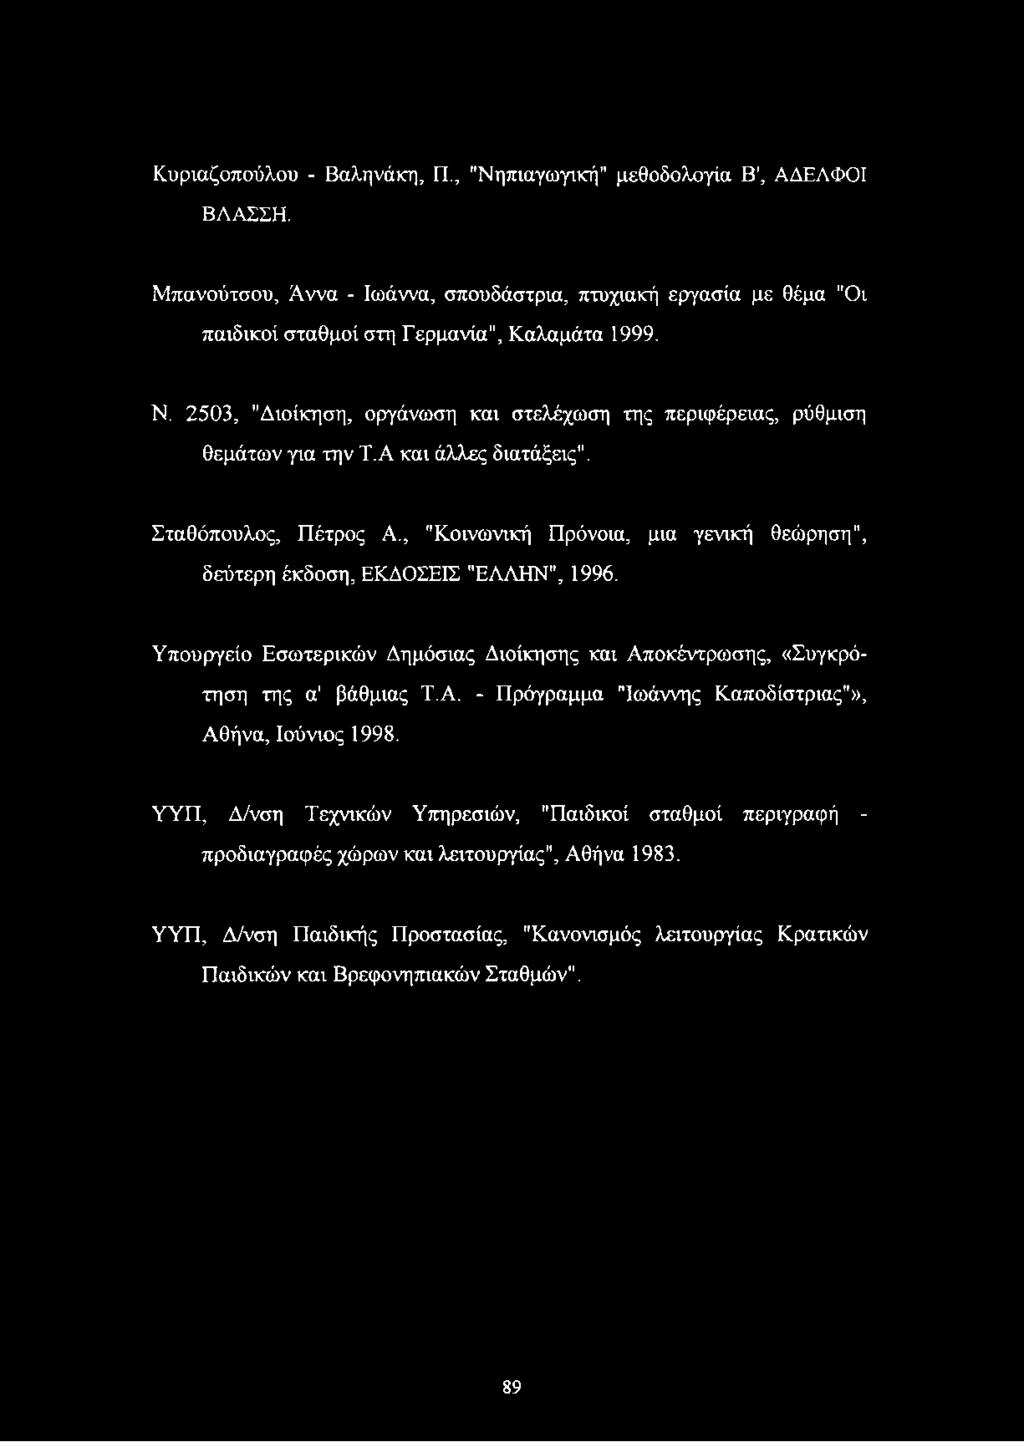 , "Κοινωνική Πρόνοια, μια γενική θεώρηση", δεύτερη έκδοση, ΕΚΔΟΣΕΙΣ "ΕΛΛΗΝ", 1996. Υπουργείο Εσωτερικών Δημόσιας Διοίκησης και Αποκέντρωσης, «Συγκρότηση της α' βάθμιας Τ.Α. - Πρόγραμμα "Ιωάννης Καποδίστριας"», Αθήνα, Ιούνιος 1998.